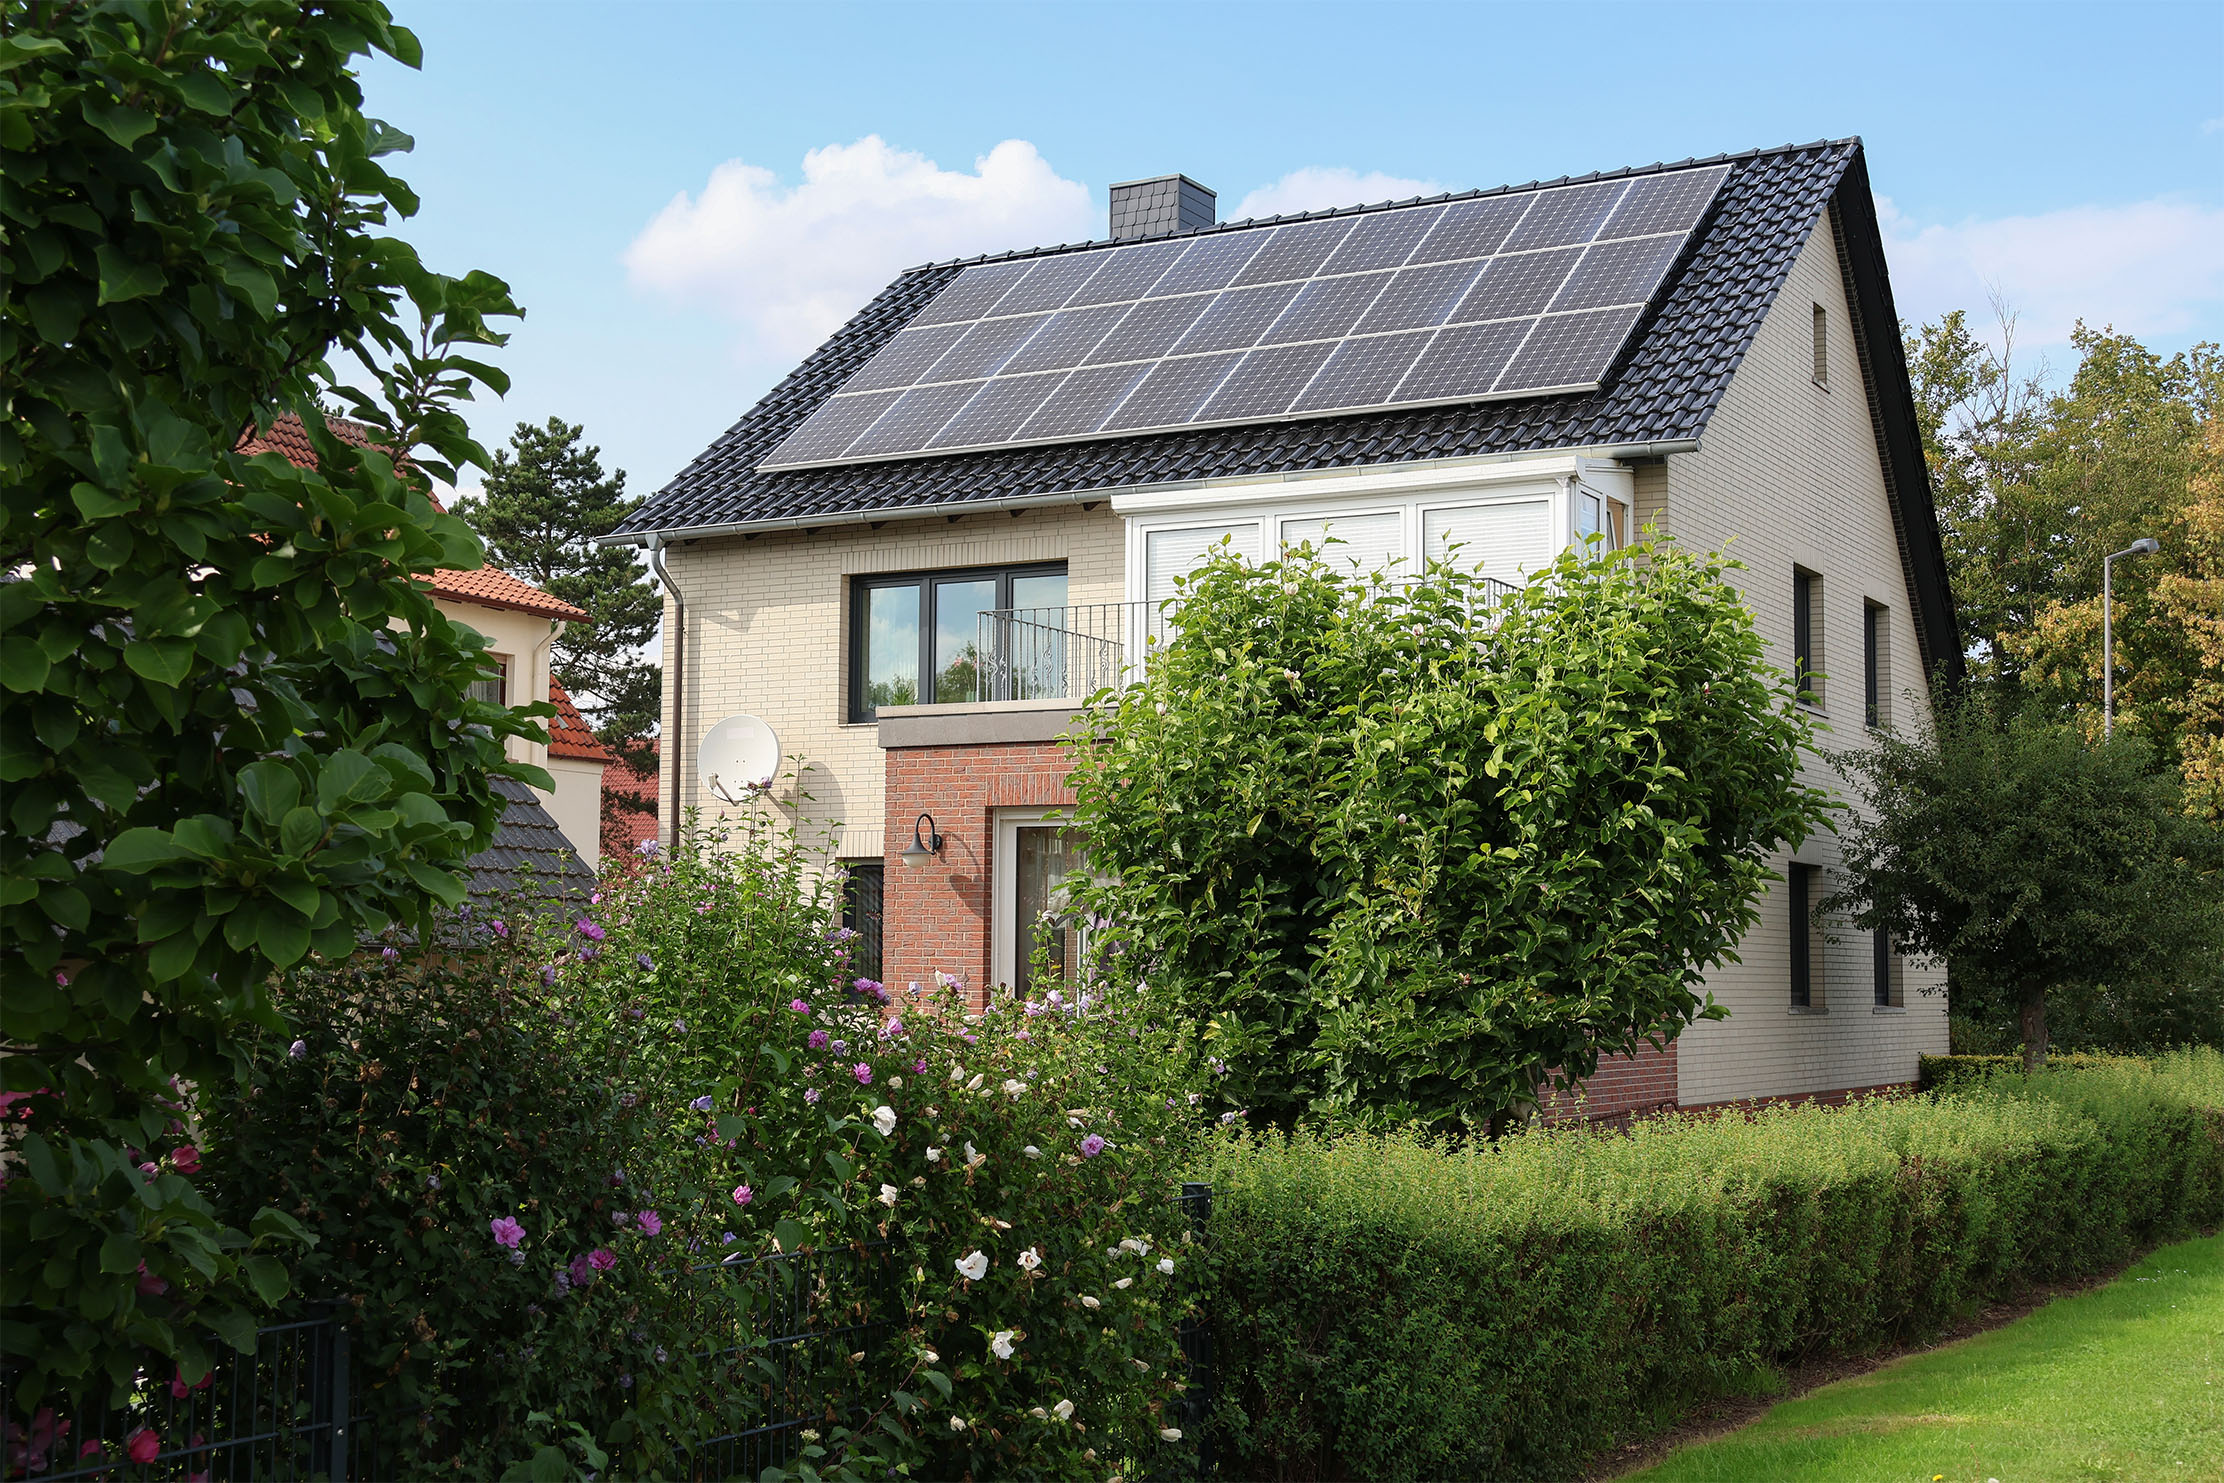 Solarpaket I: Neuer Antrieb für Photovoltaik-Projekte